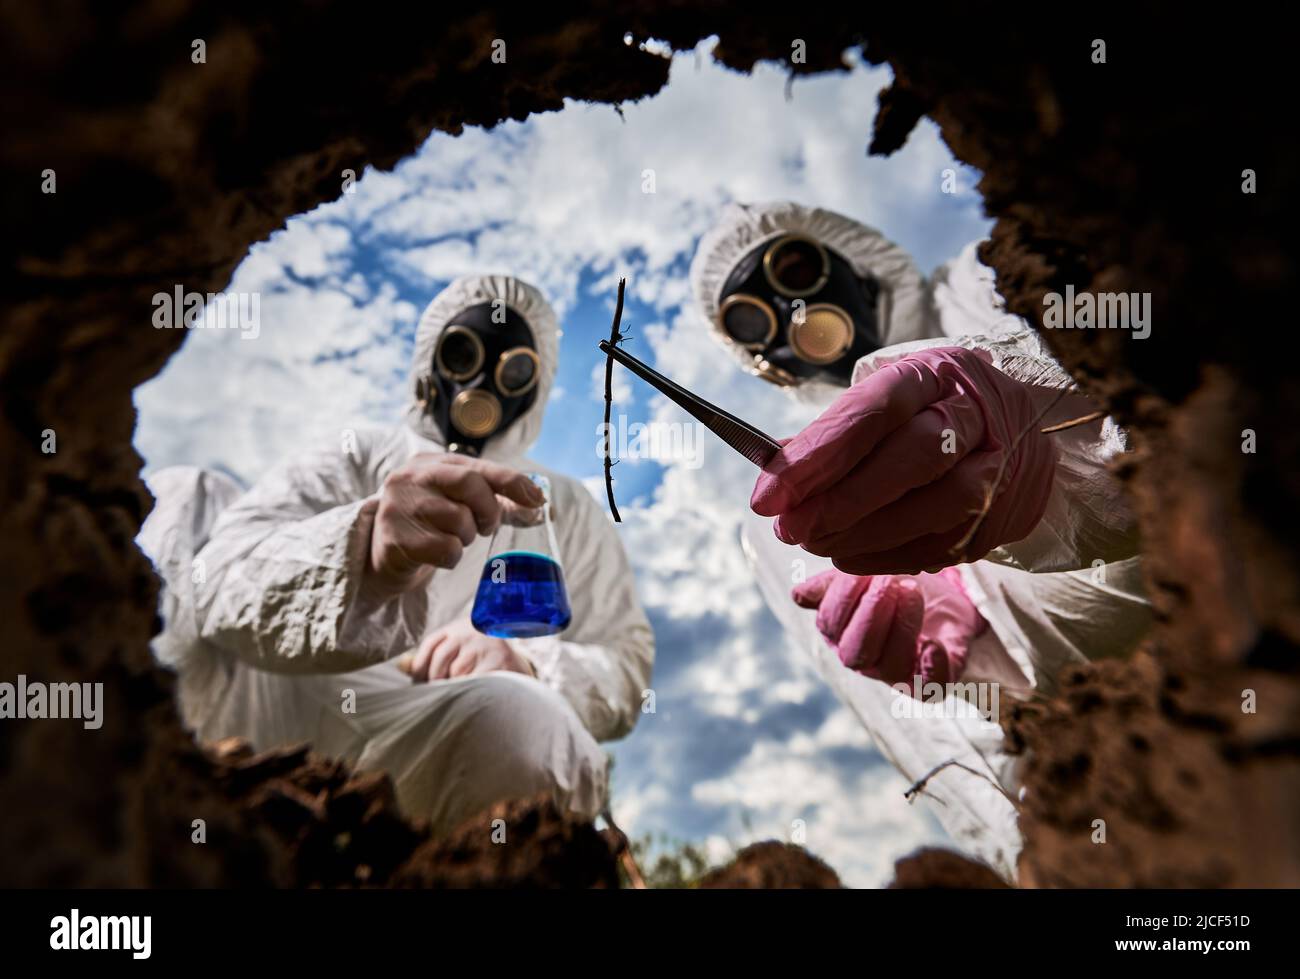 Wissenschaftler in Gasmasken und Schutzoveralls, die Reagenzglas mit blauer Flüssigkeit und Probe halten während eines gemeinsamen Experiments im radioaktiven Bereich untersuchen Fachleute die Verschmutzung. Blick von der Erdgrube. Stockfoto